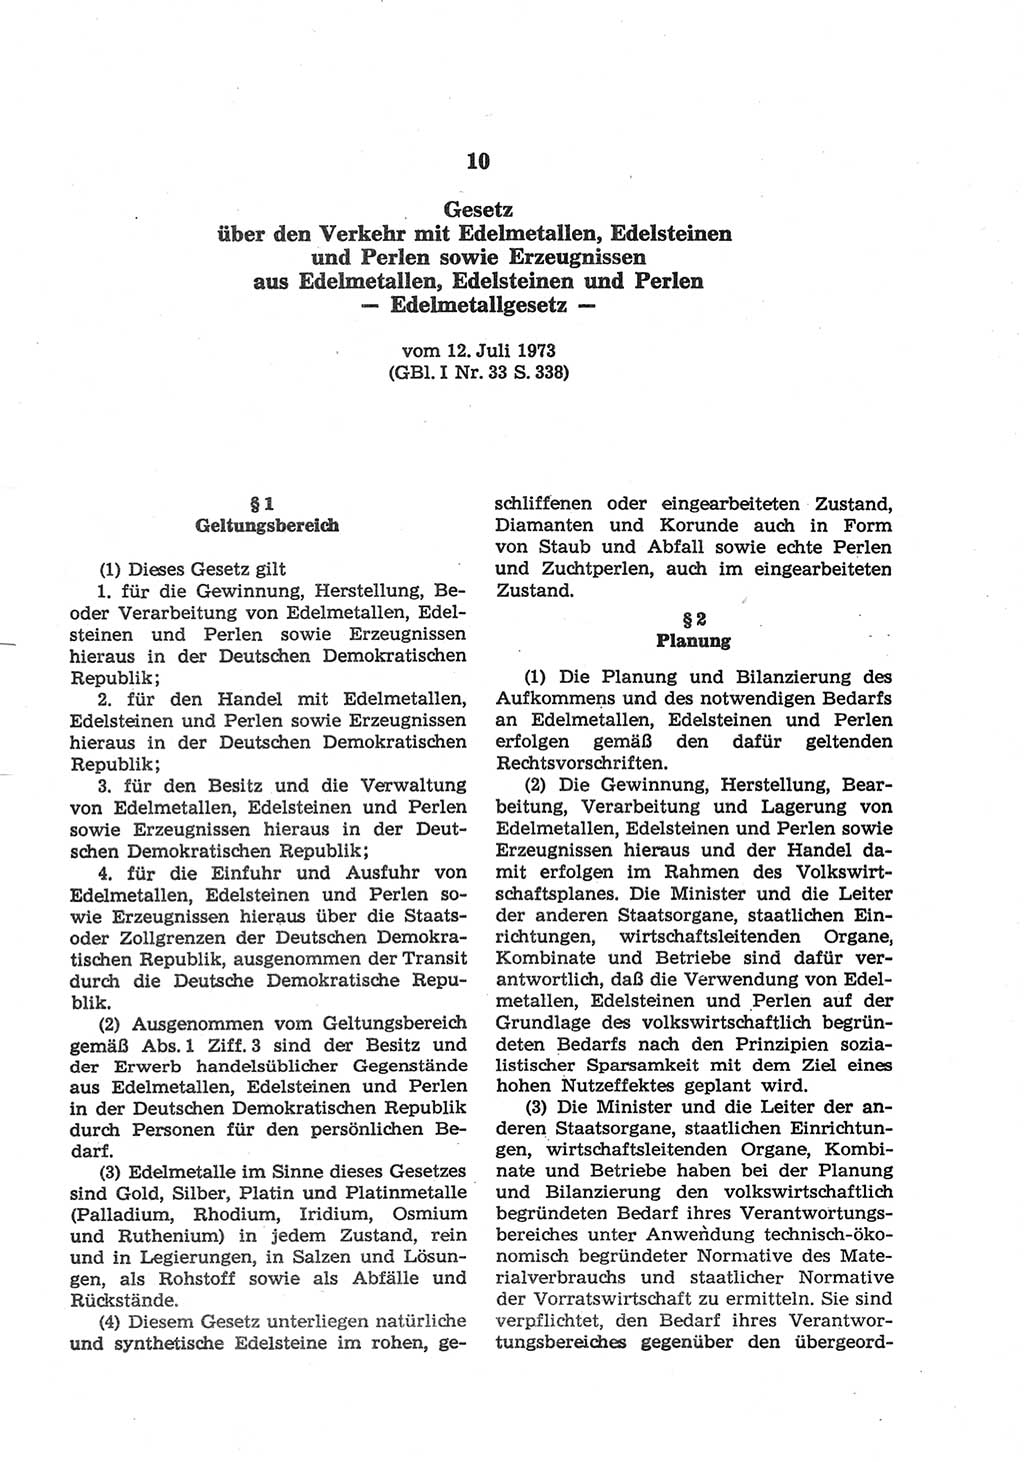 Strafgesetzbuch (StGB) der Deutschen Demokratischen Republik (DDR) und angrenzende Gesetze und Bestimmungen 1977, Seite 217 (StGB DDR Ges. Best. 1977, S. 217)